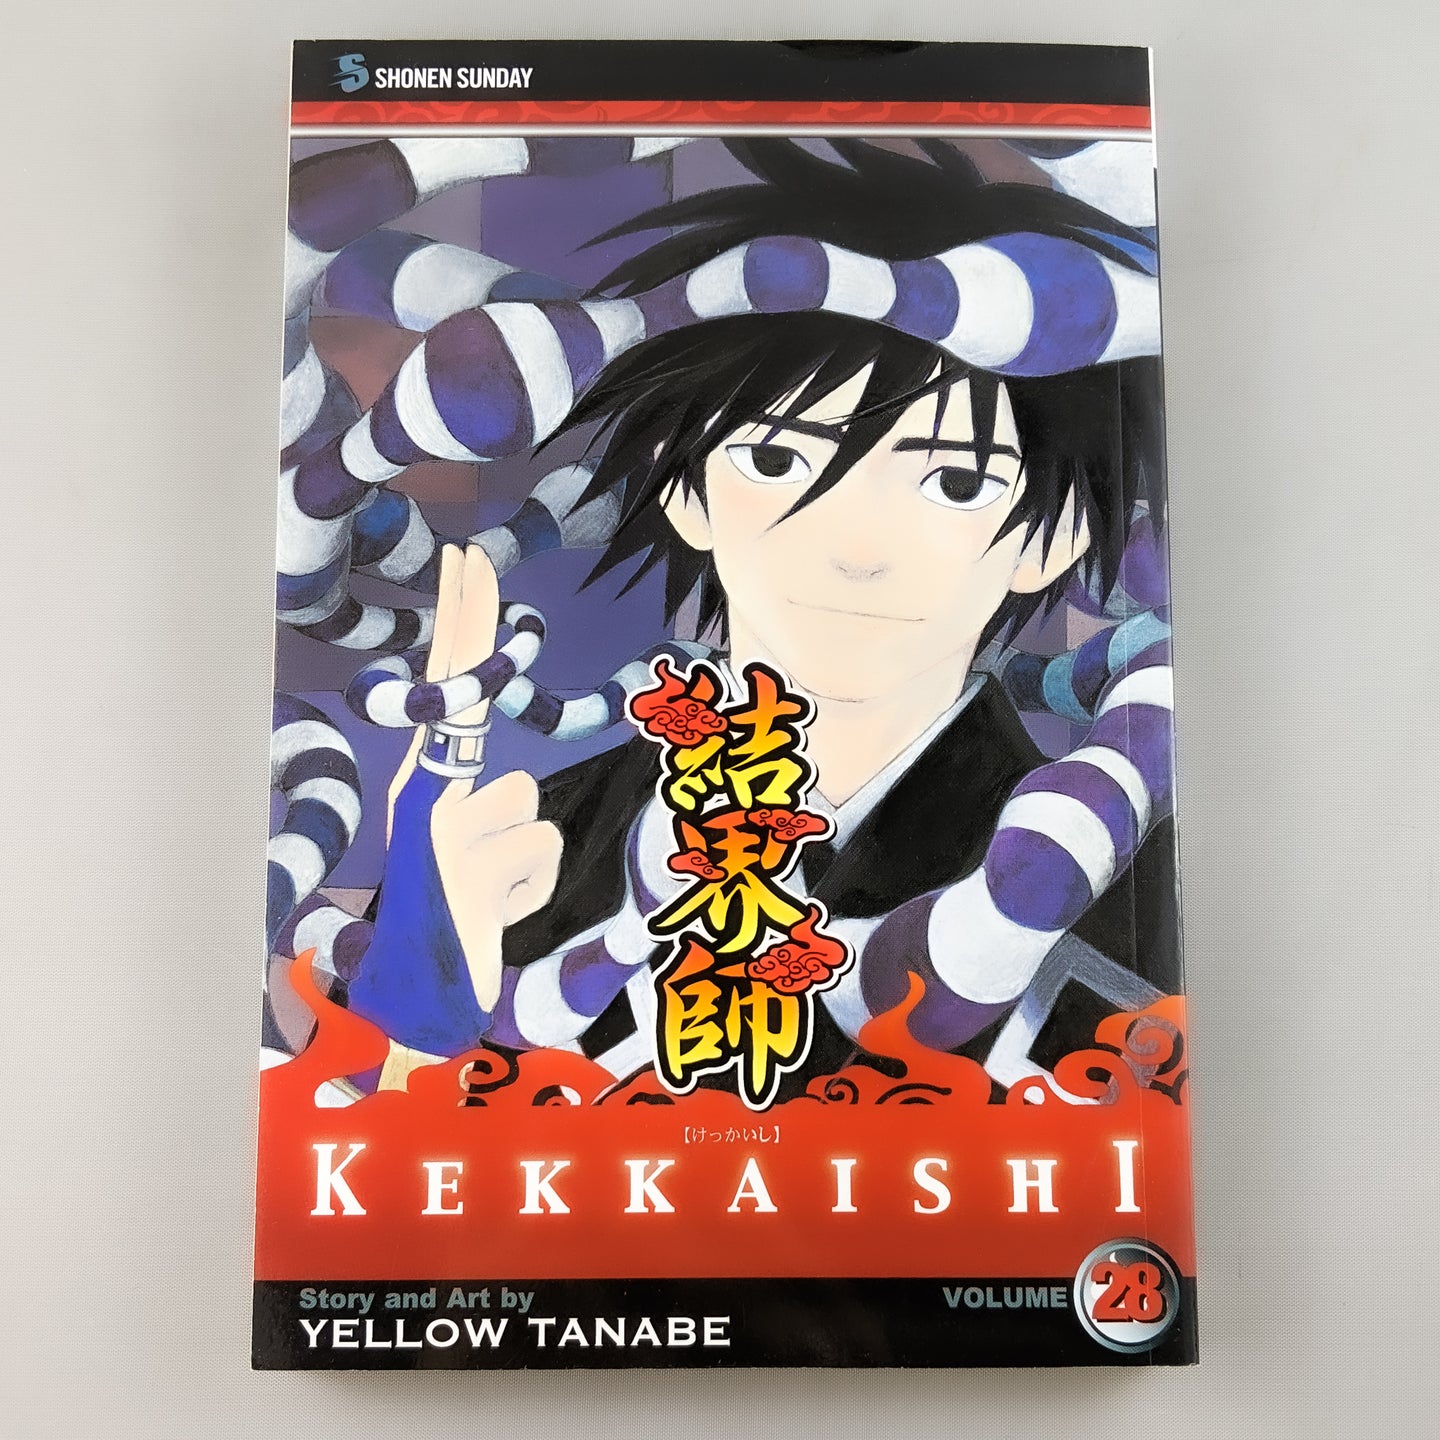 Kekkaishi volume 28. Manga by Yellow Tanabe.